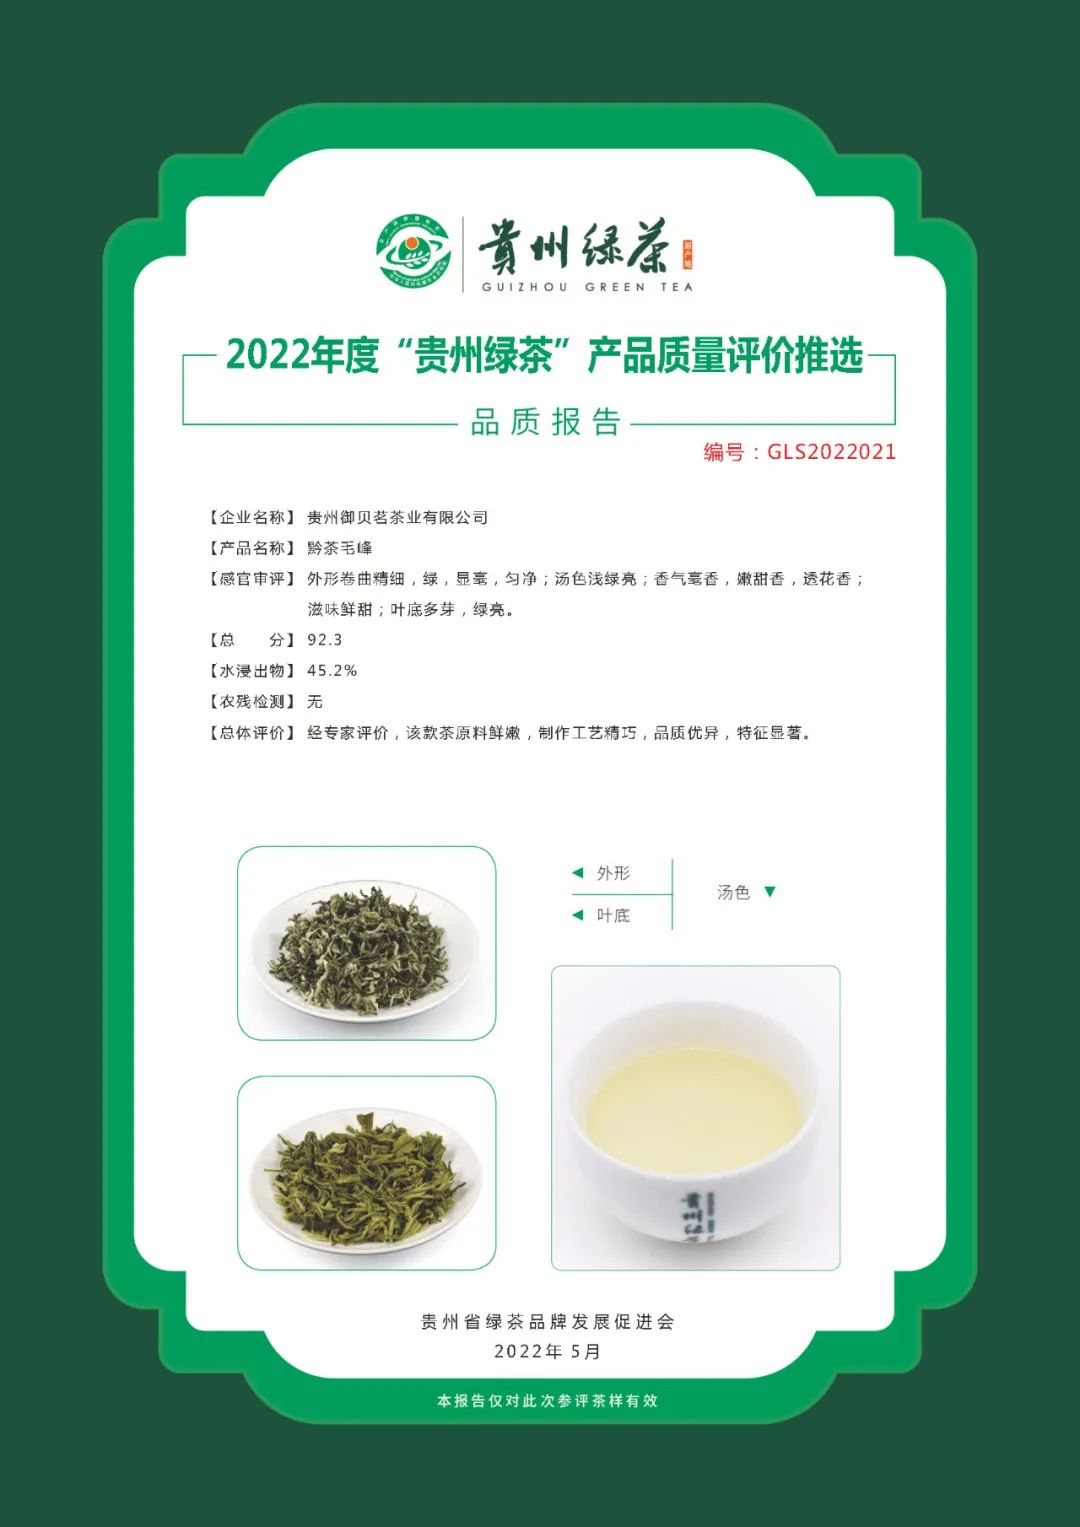 2022年“贵州绿茶”品质报告丨贵州御贝茗茶业有限公司—黔茶毛峰